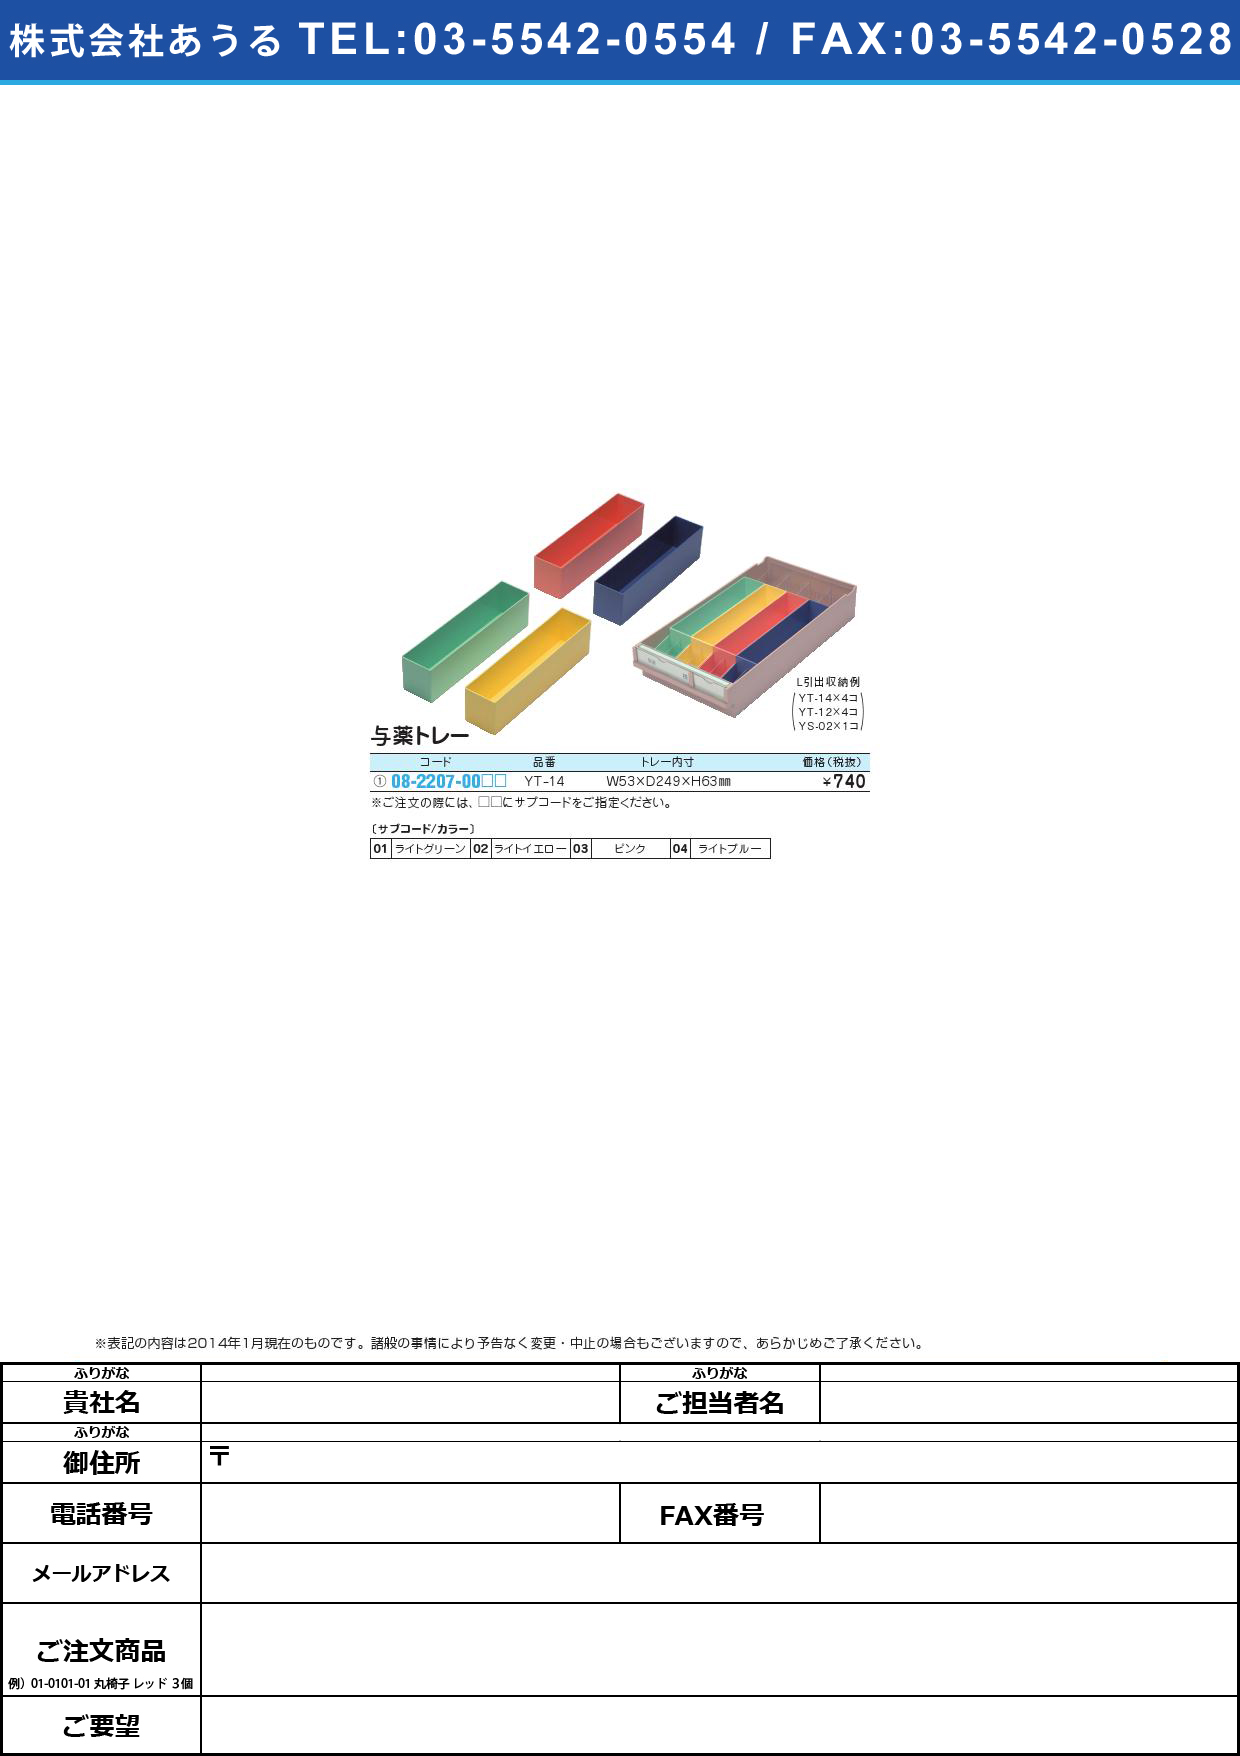 与薬トレー ﾖﾔｸﾄﾚｰ YT-14【1個単位】(08-2207-00)